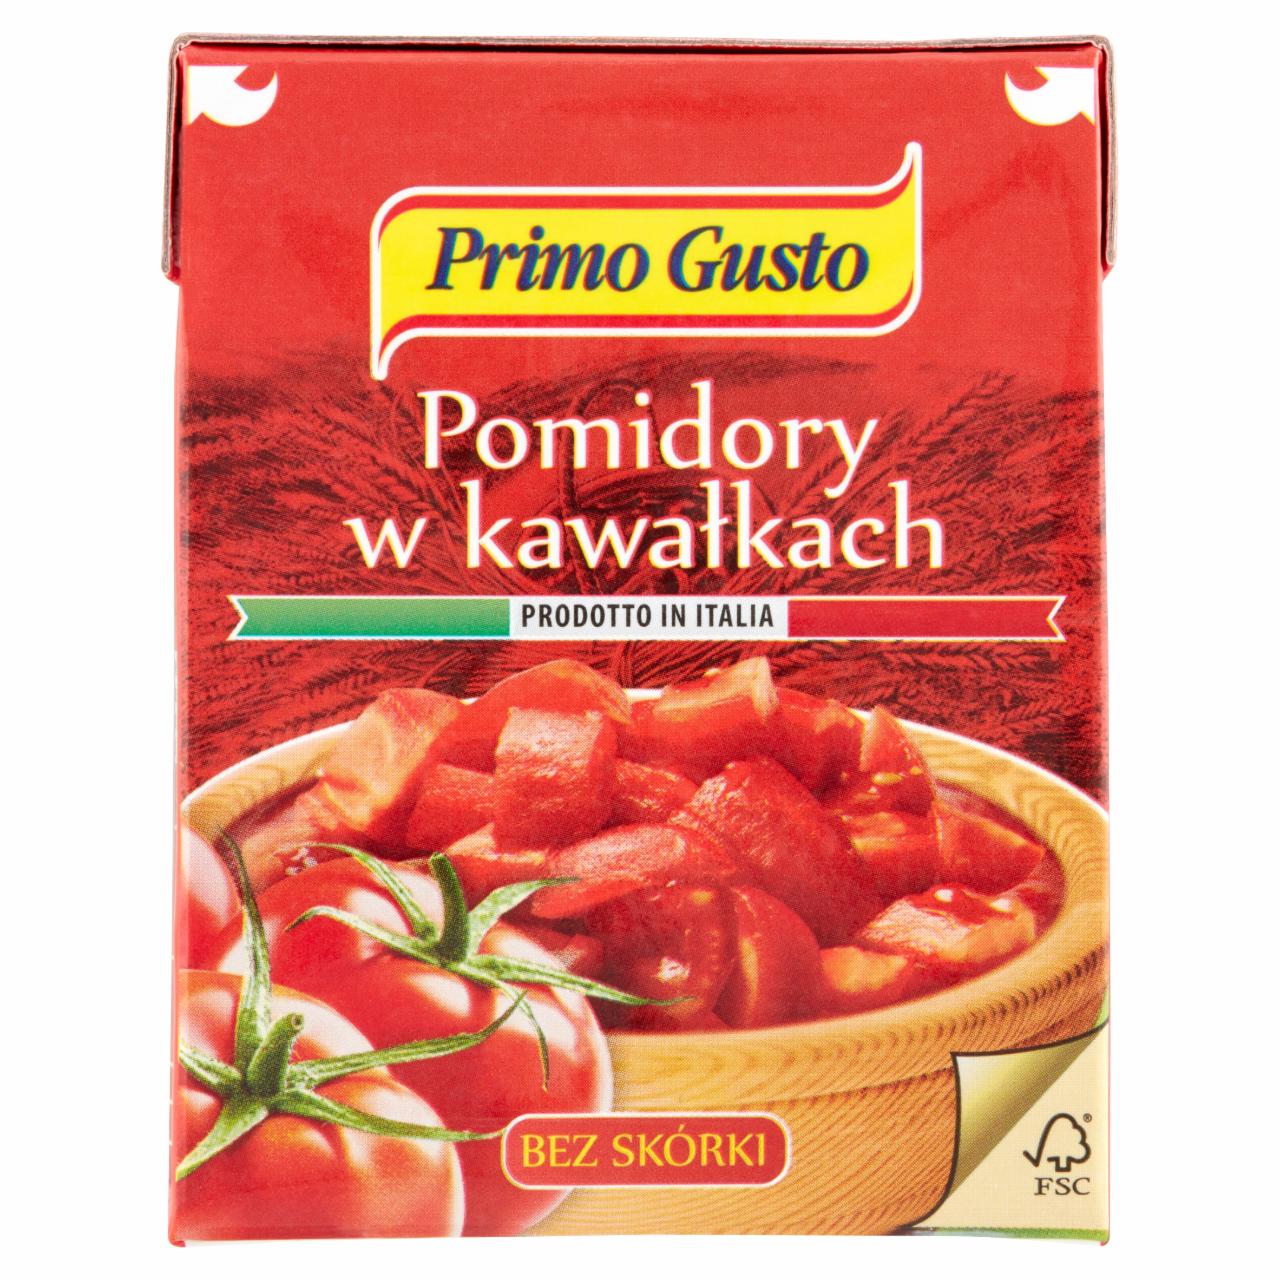 Zdjęcia - Primo Gusto Pomidory w kawałkach bez skórki 390 g